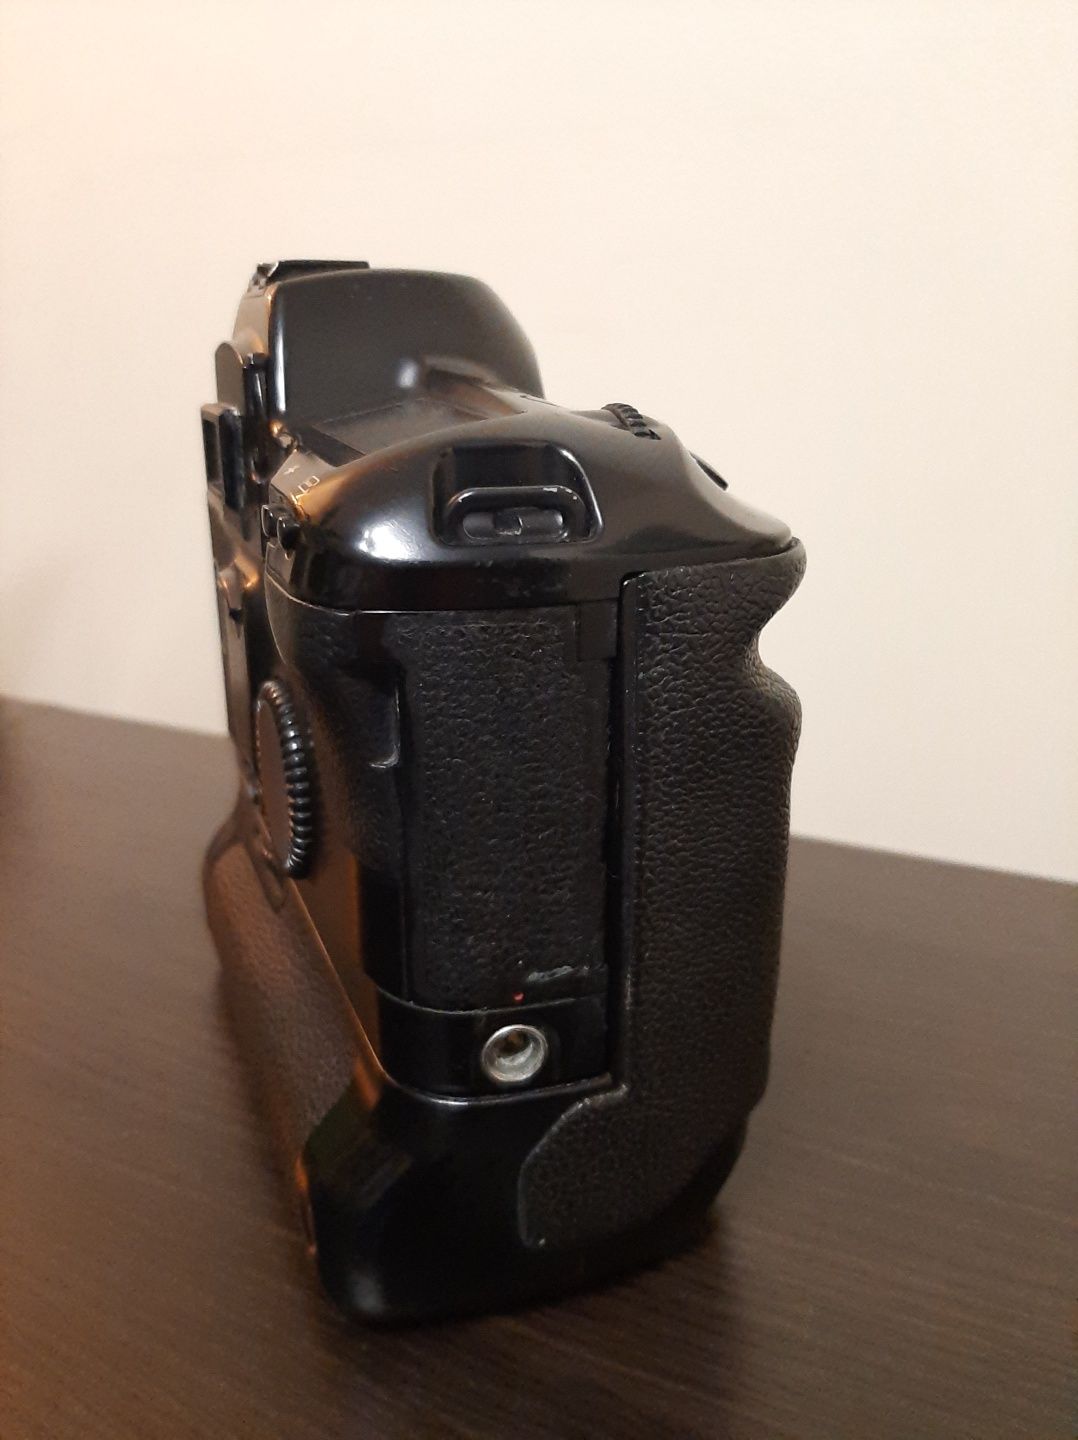 Aparat analogowy Canon Eos 1n + Grip